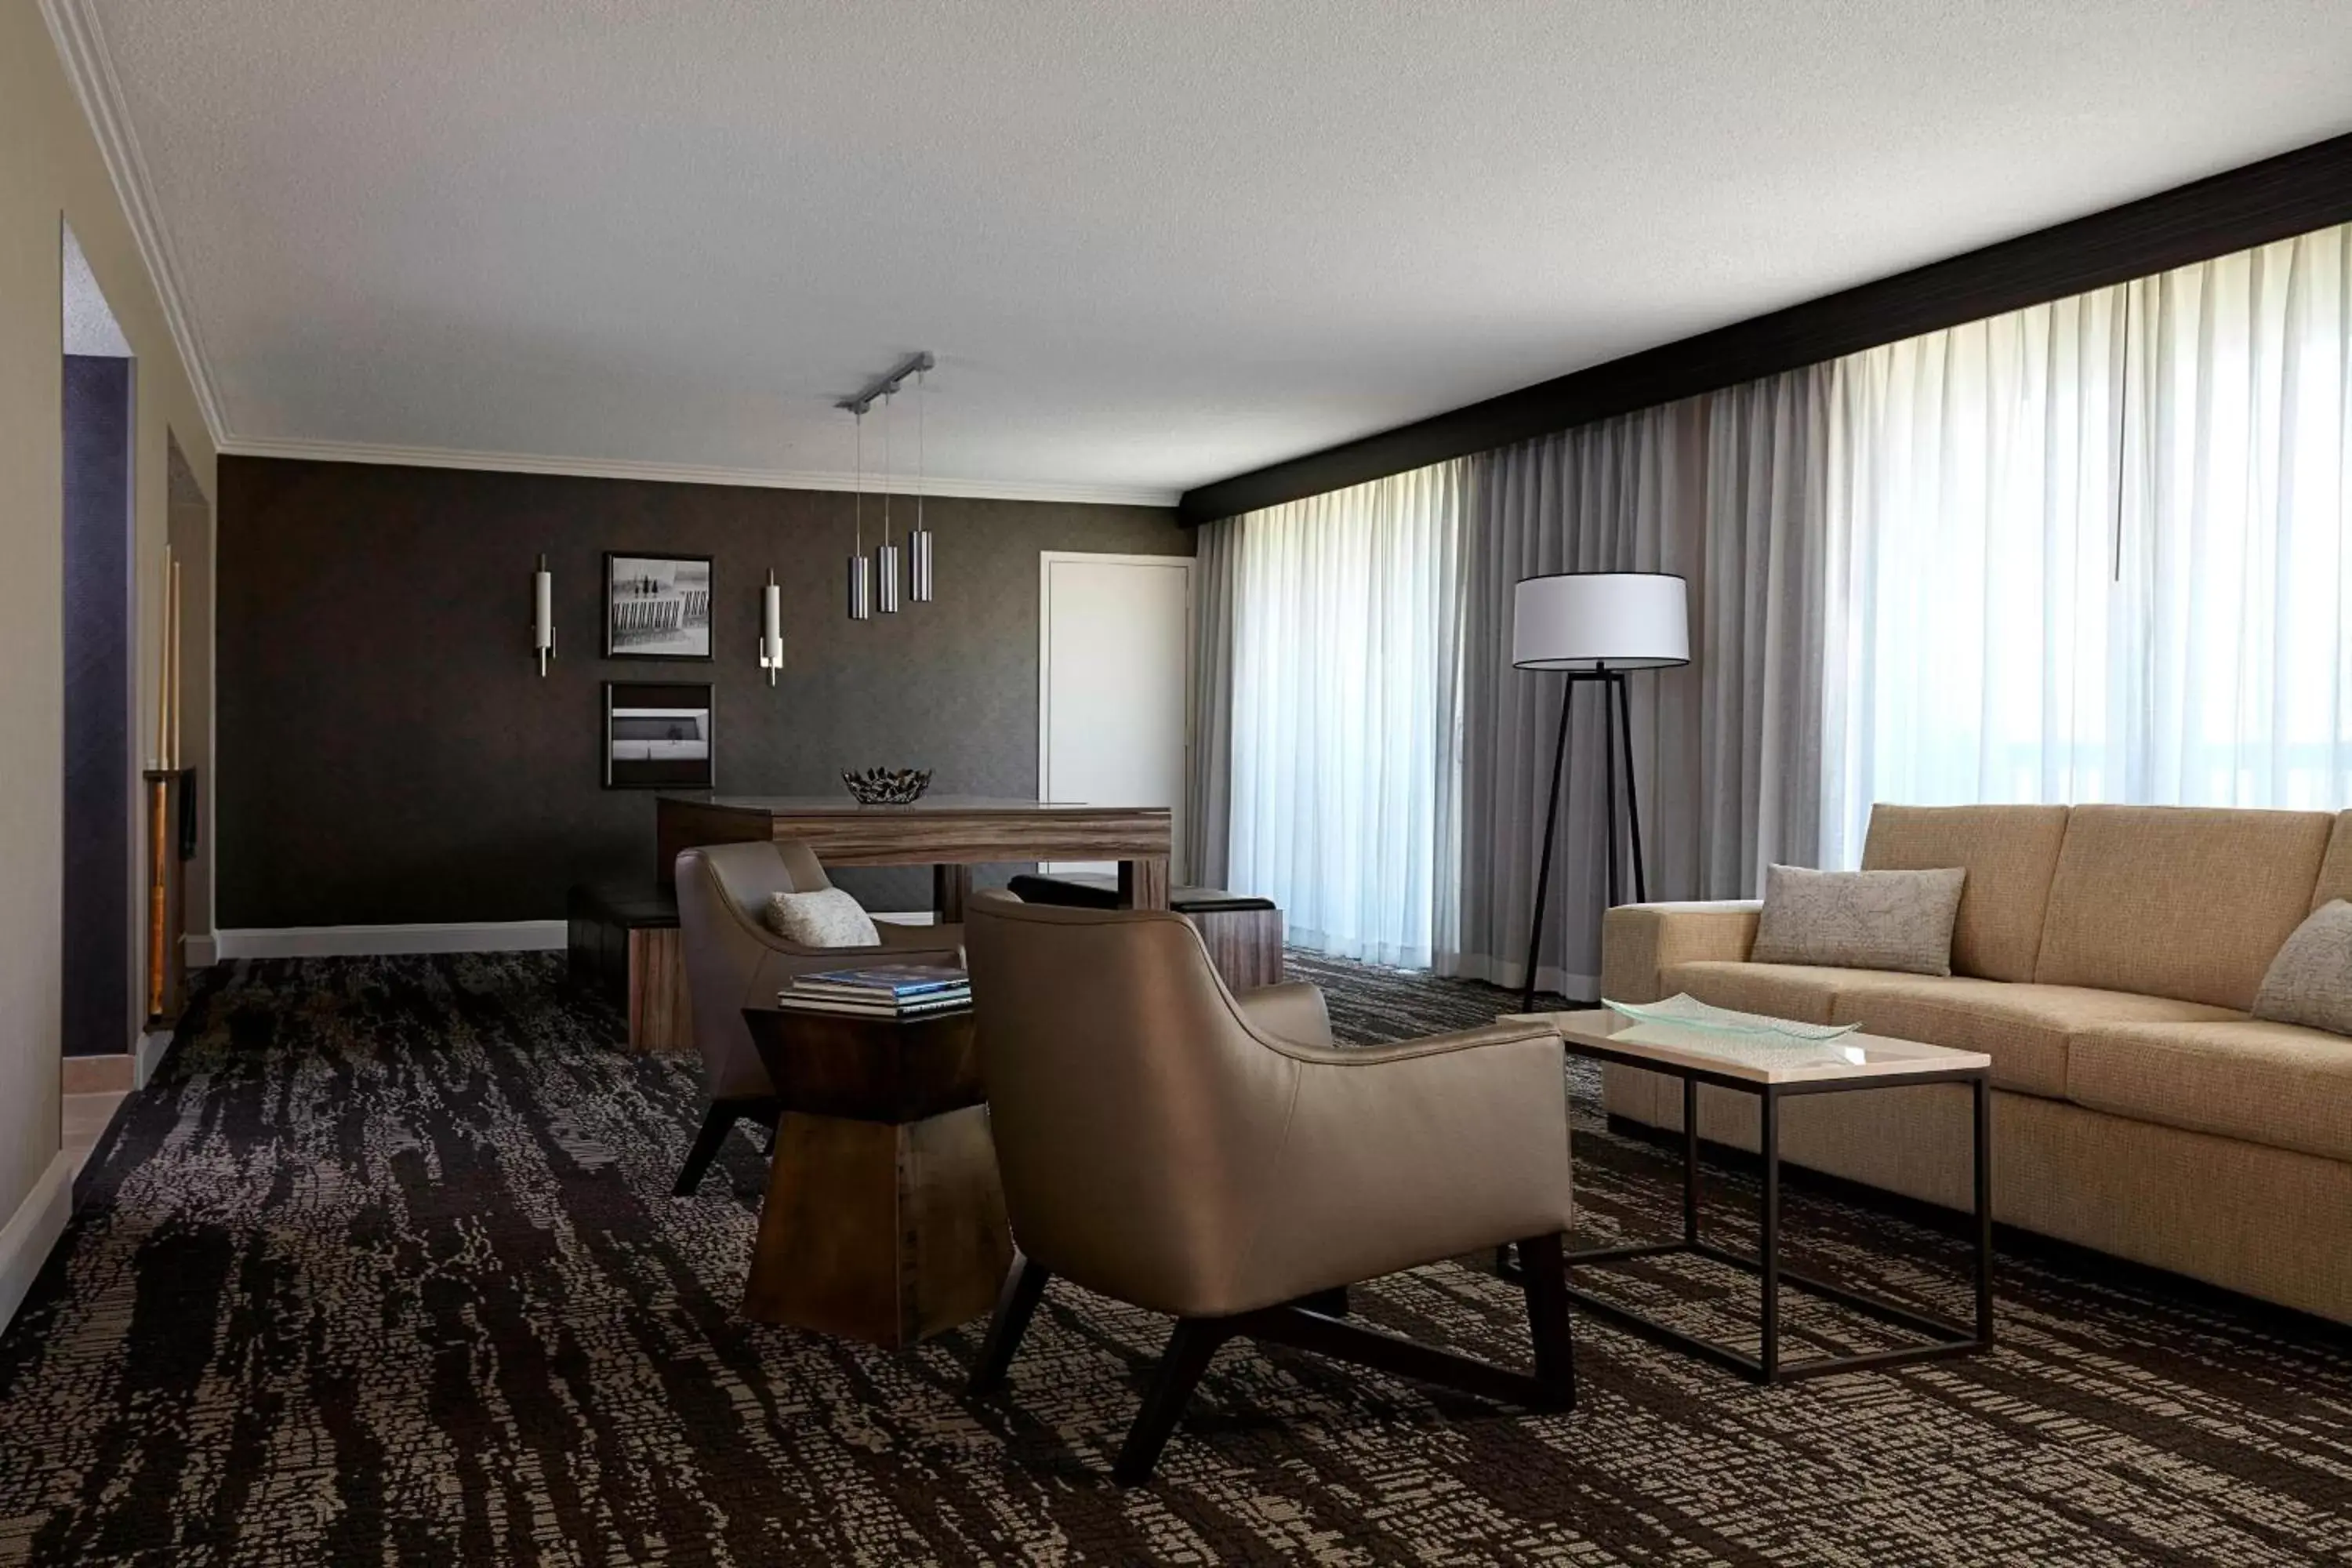 Bedroom, Seating Area in Bethesda Marriott